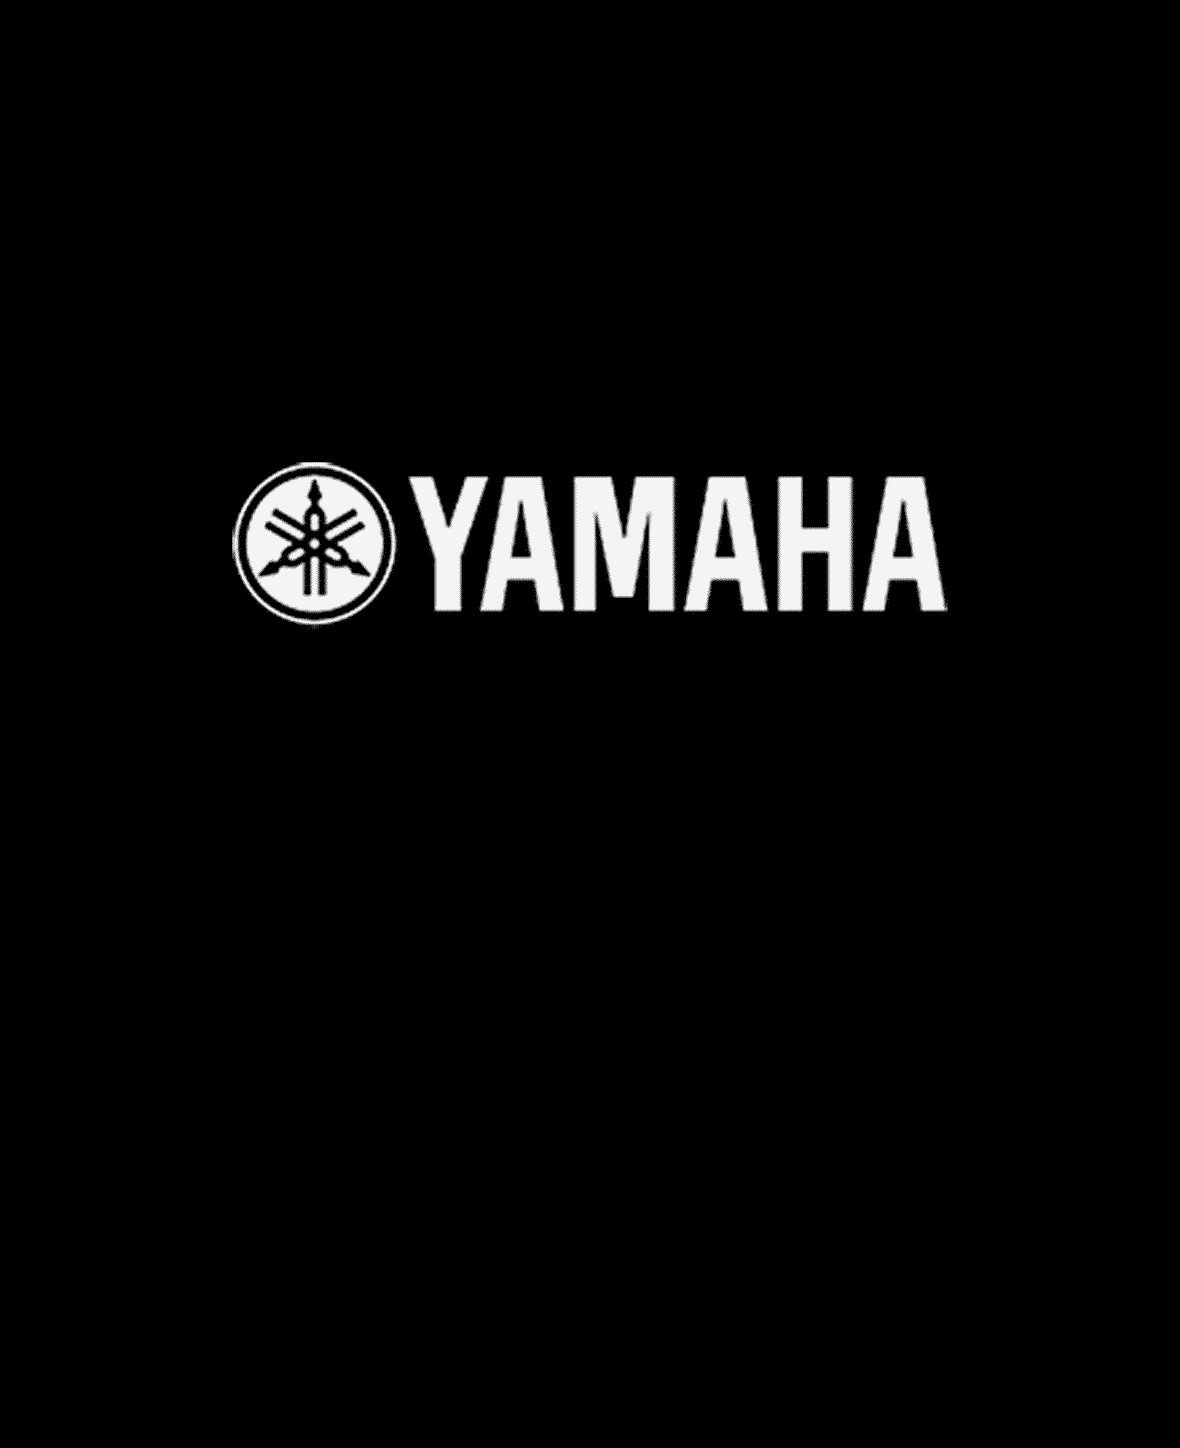 yamaha logo weiß auf schwarzem Hintergrund - Kunde für SEO Workshop bei Slidebird